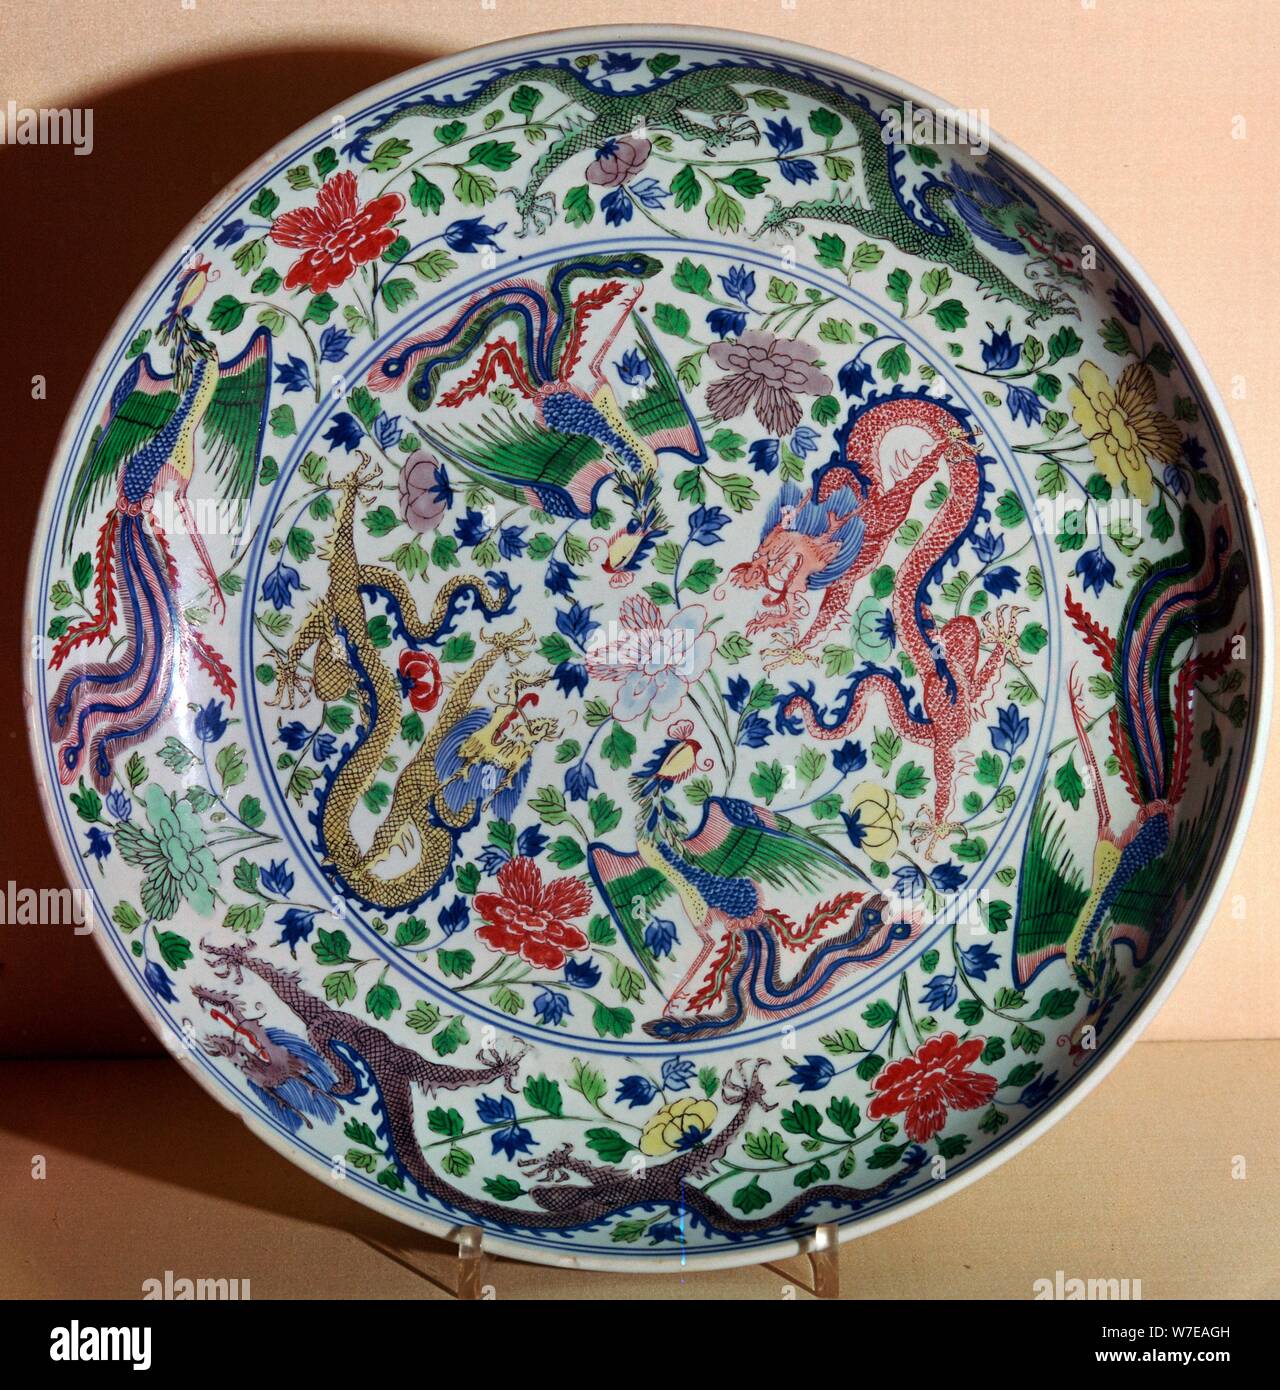 Chinesisches Porzellan Teller mit einem Design von Drachen und phoenixes, 17. Jahrhundert v. Chr. Artist: Unbekannt Stockfoto